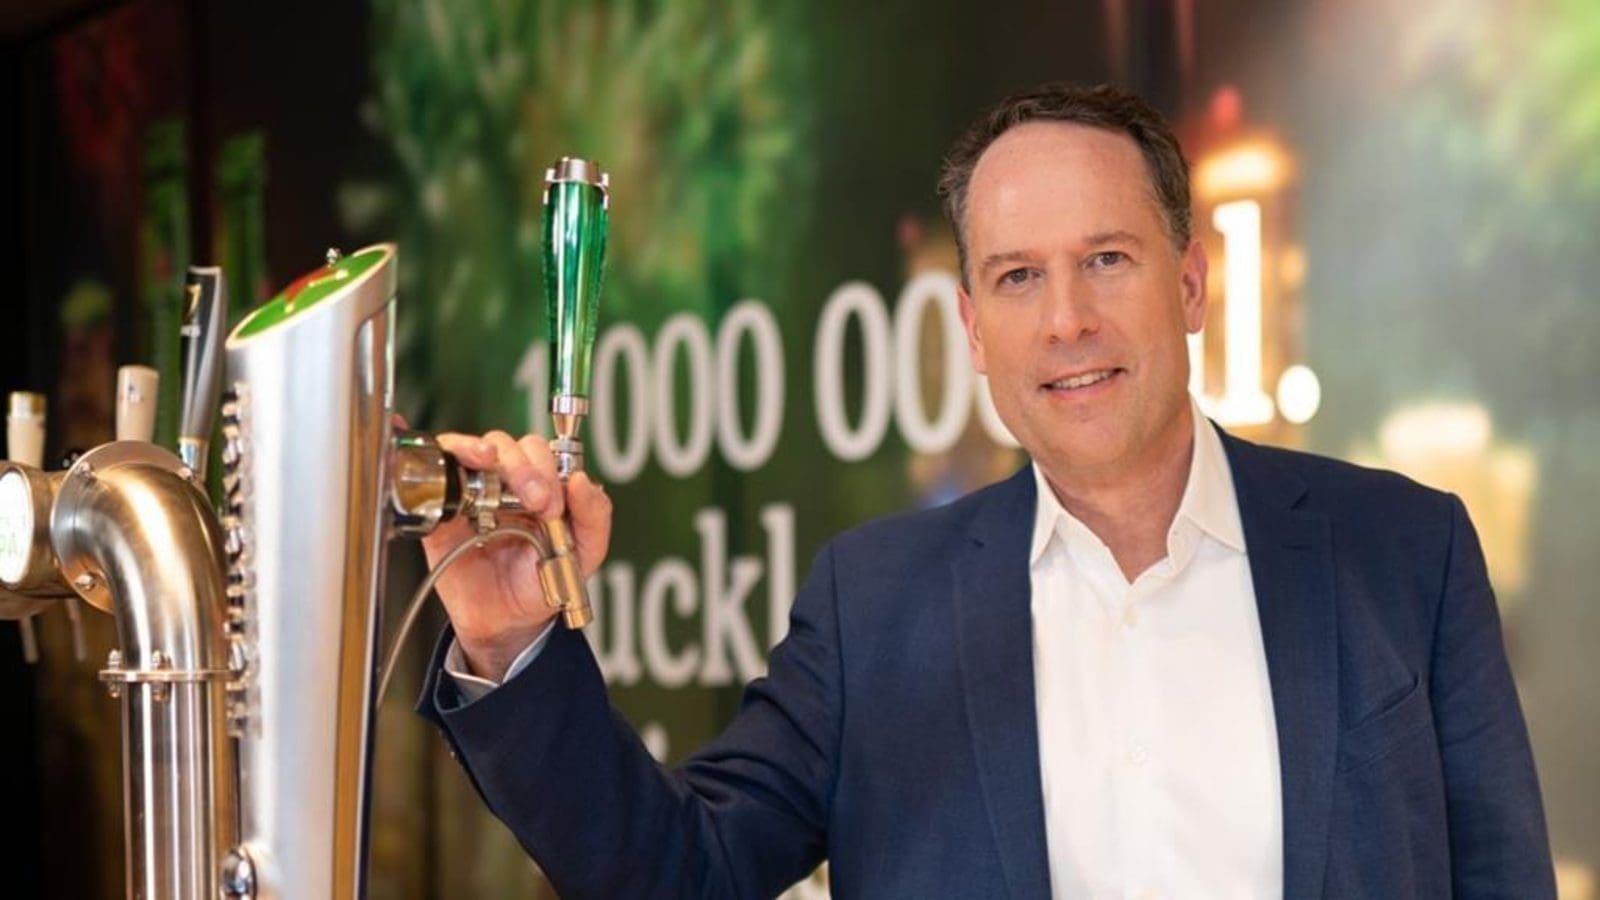 Heineken UK appoints Boudewijn Haarsma as Managing Director